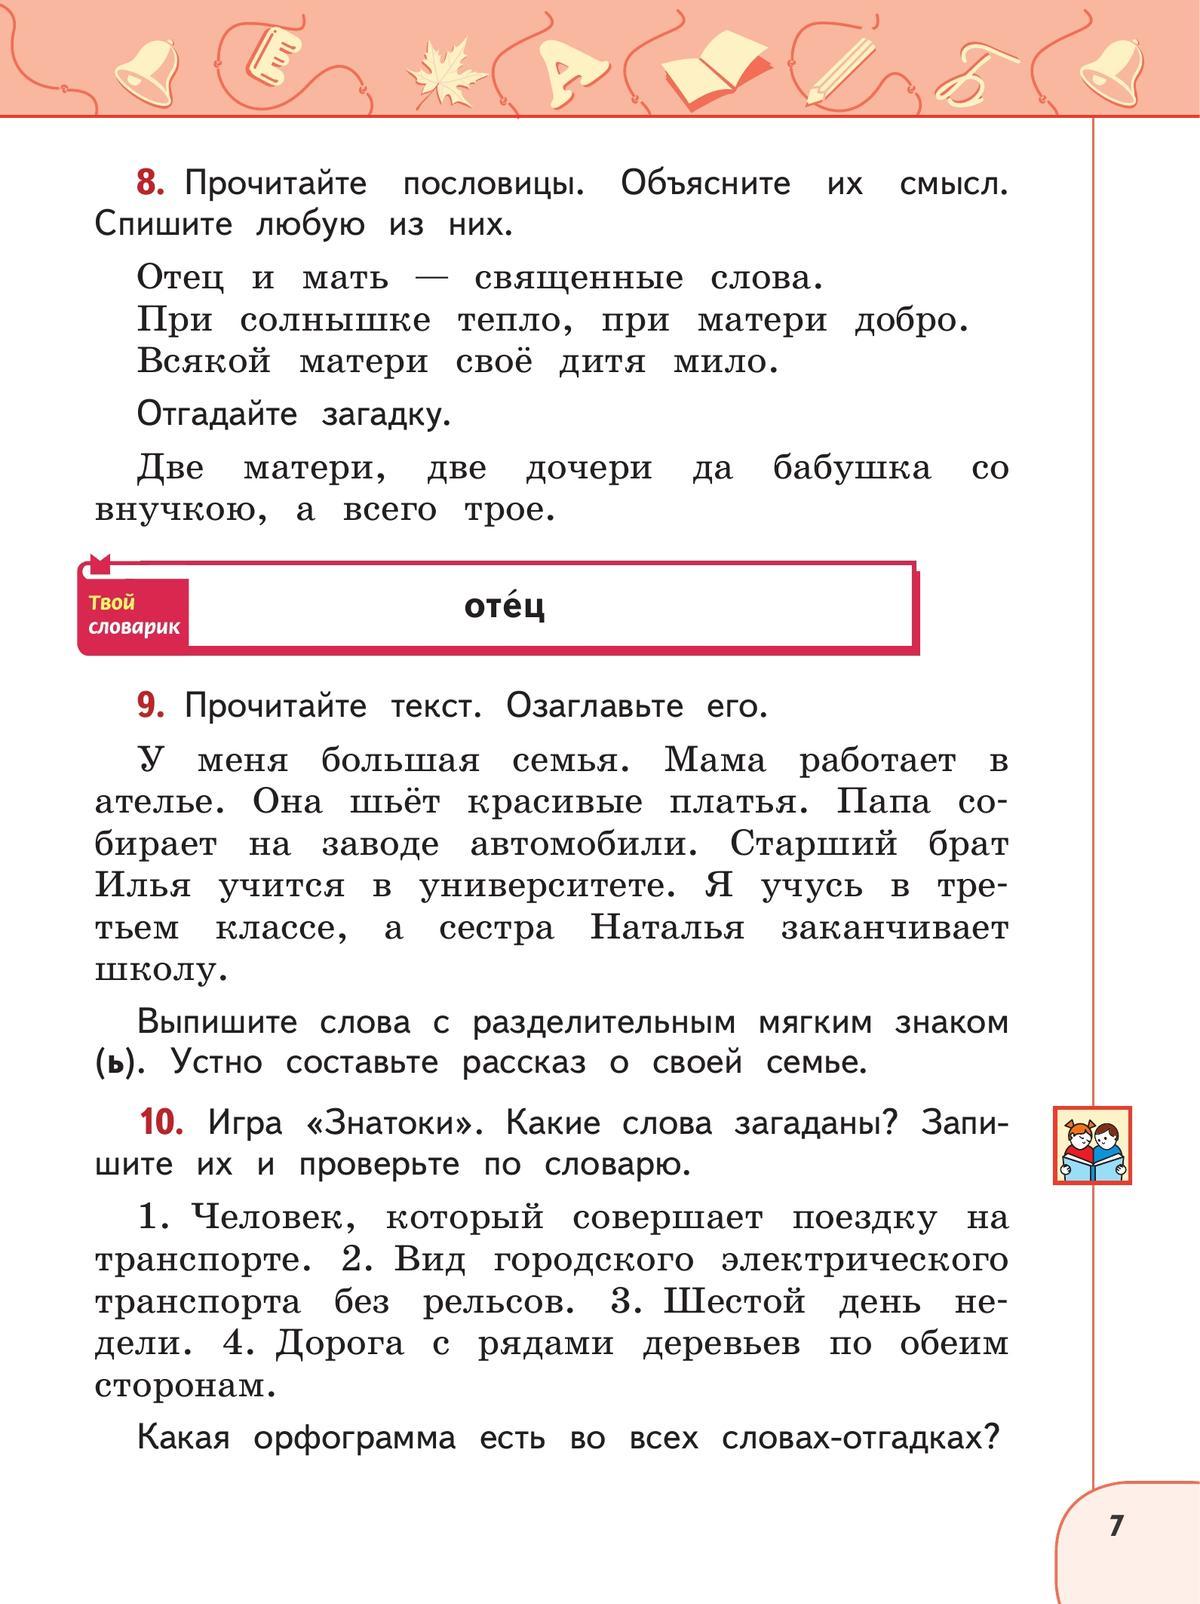 Русский язык. 2 класс. В 2 ч. Часть 2. Учебное пособие 9